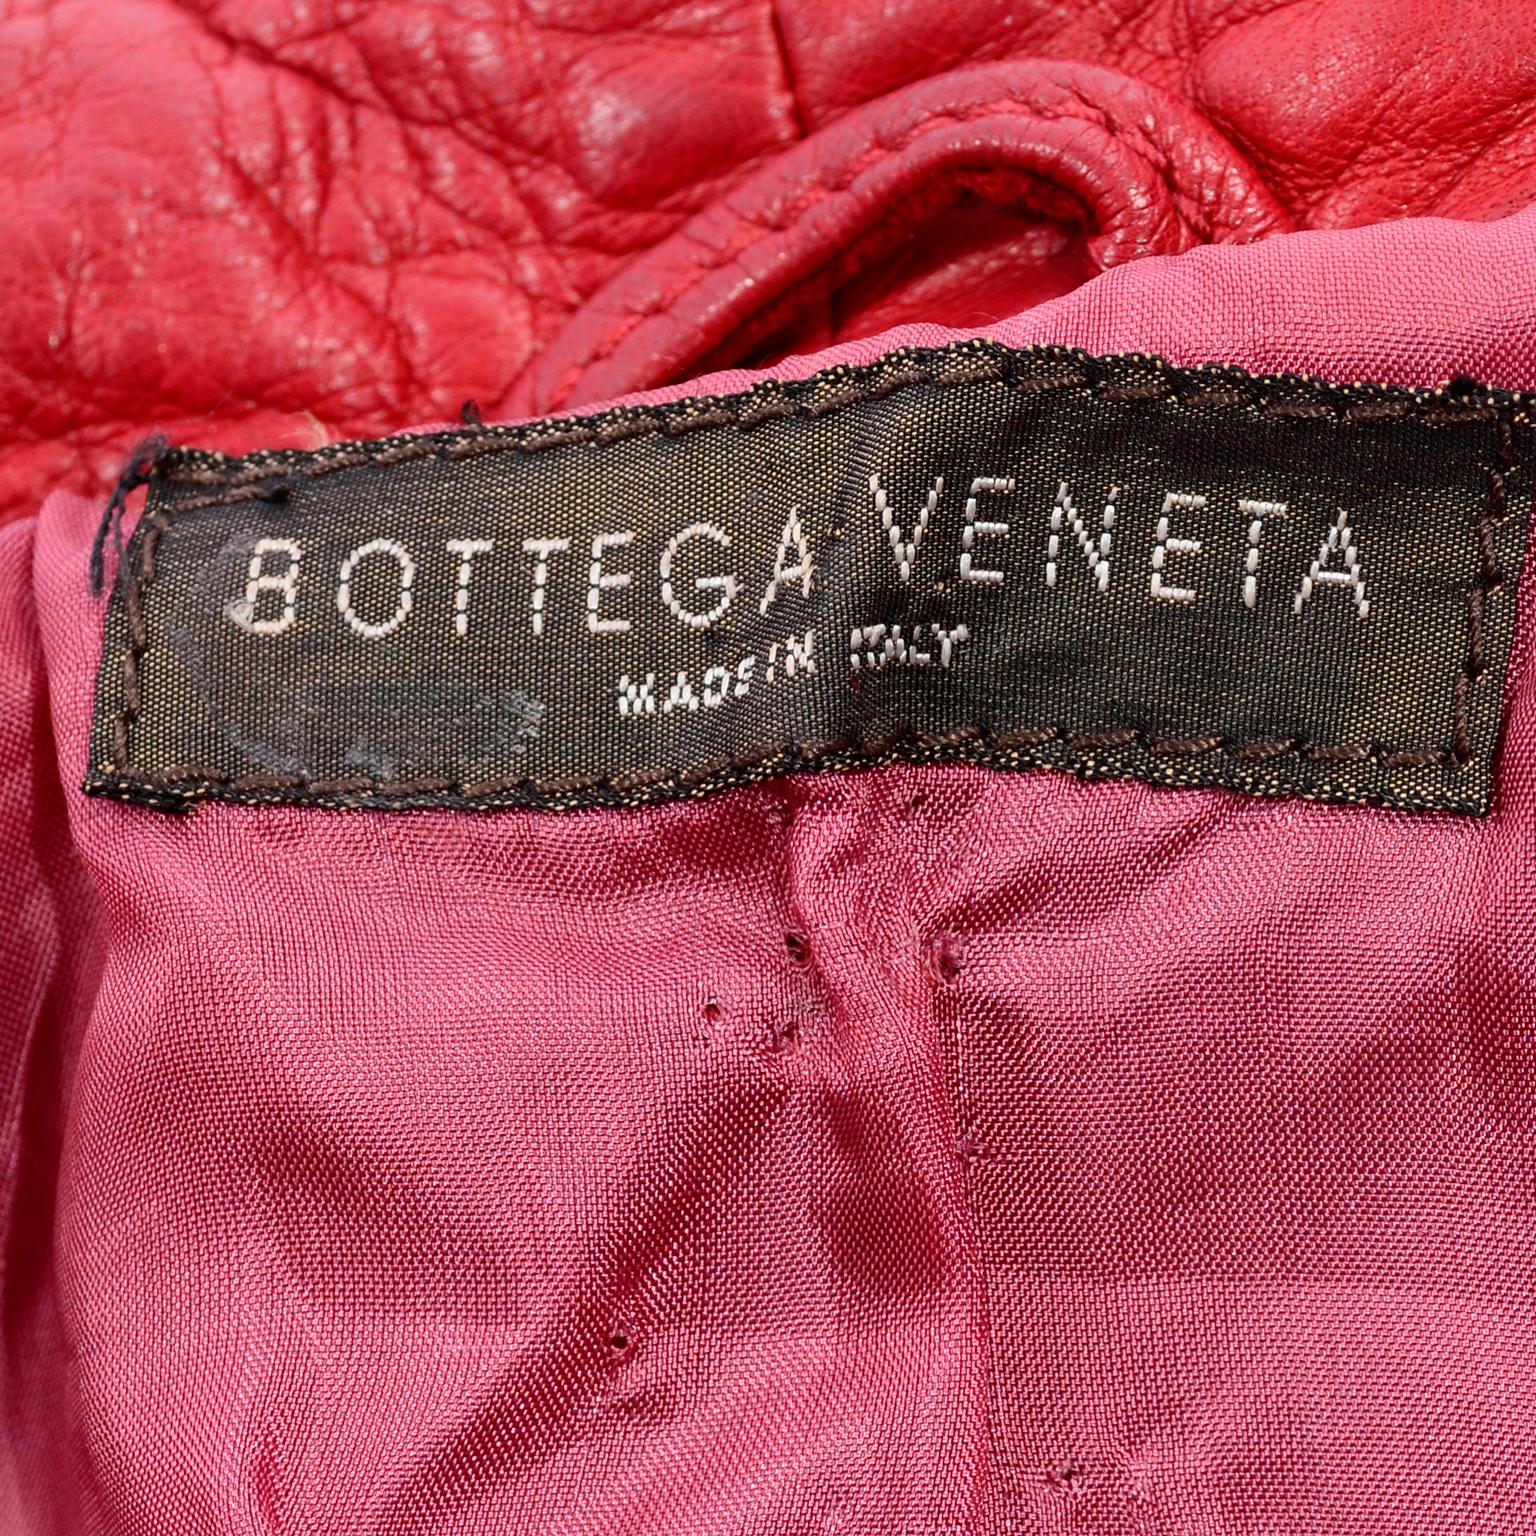 Bottega Veneta Burgundy Leather Jacket With Fringe Panels 5